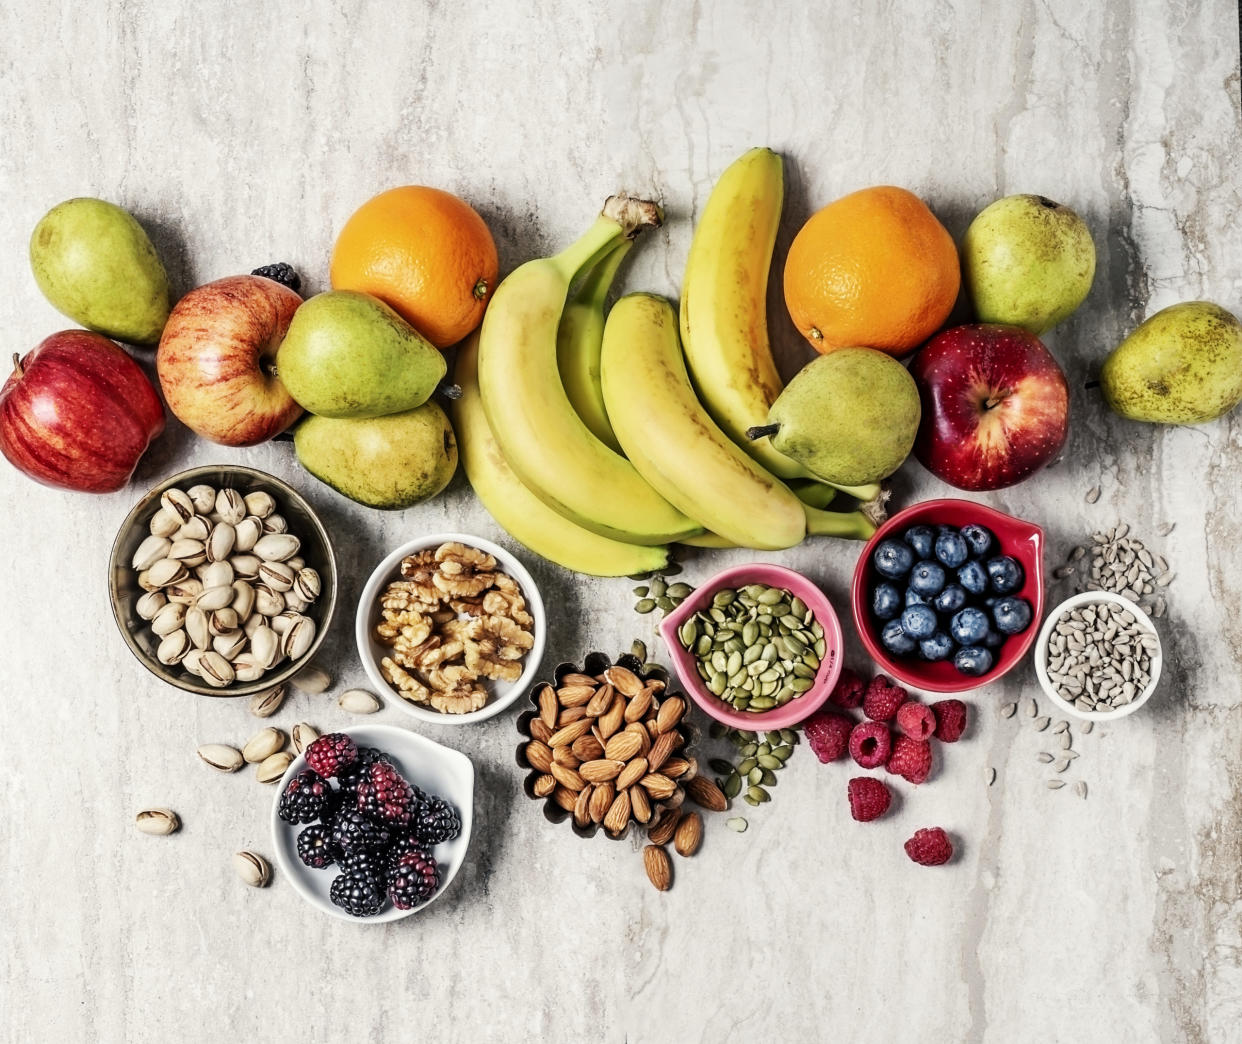 Hülsenfrüchte, Nüsse, Vitamin C: Wir verraten, welche Hausmittel beim Abnehmen helfen. - Copyright: Claudia Totir / Getty Images